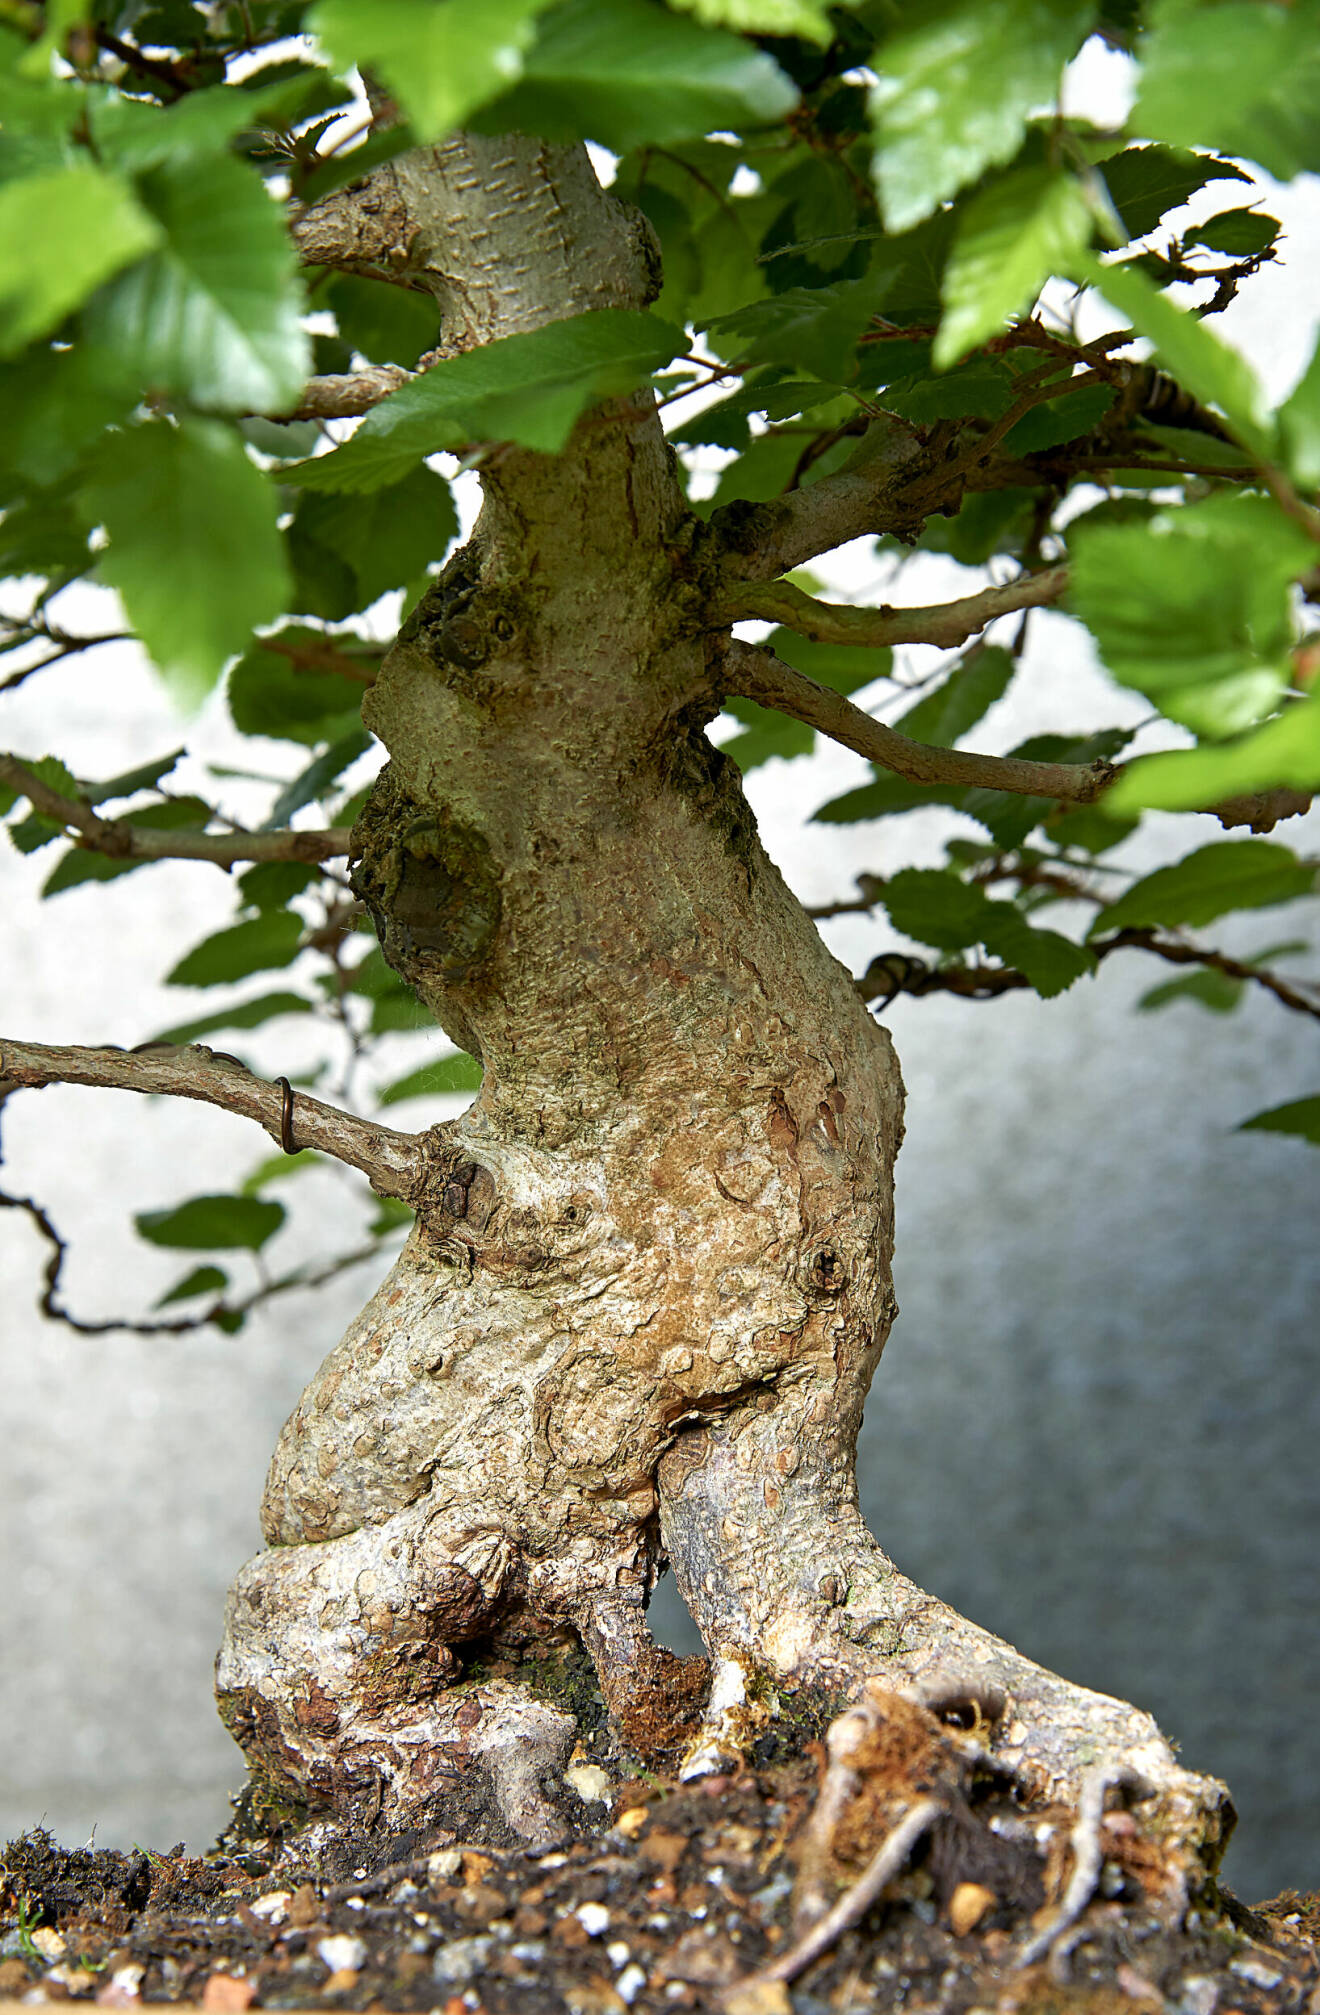 Synliga rötter är en viktig detalj på en bonsai. Det får man fram genom att man årligen
klipper de djupaste rötterna och kortar sugrötterna under de första åren. Pålrötterna som
går på djupet behövs inte på en bonsai utan tas succesivt bort helt.